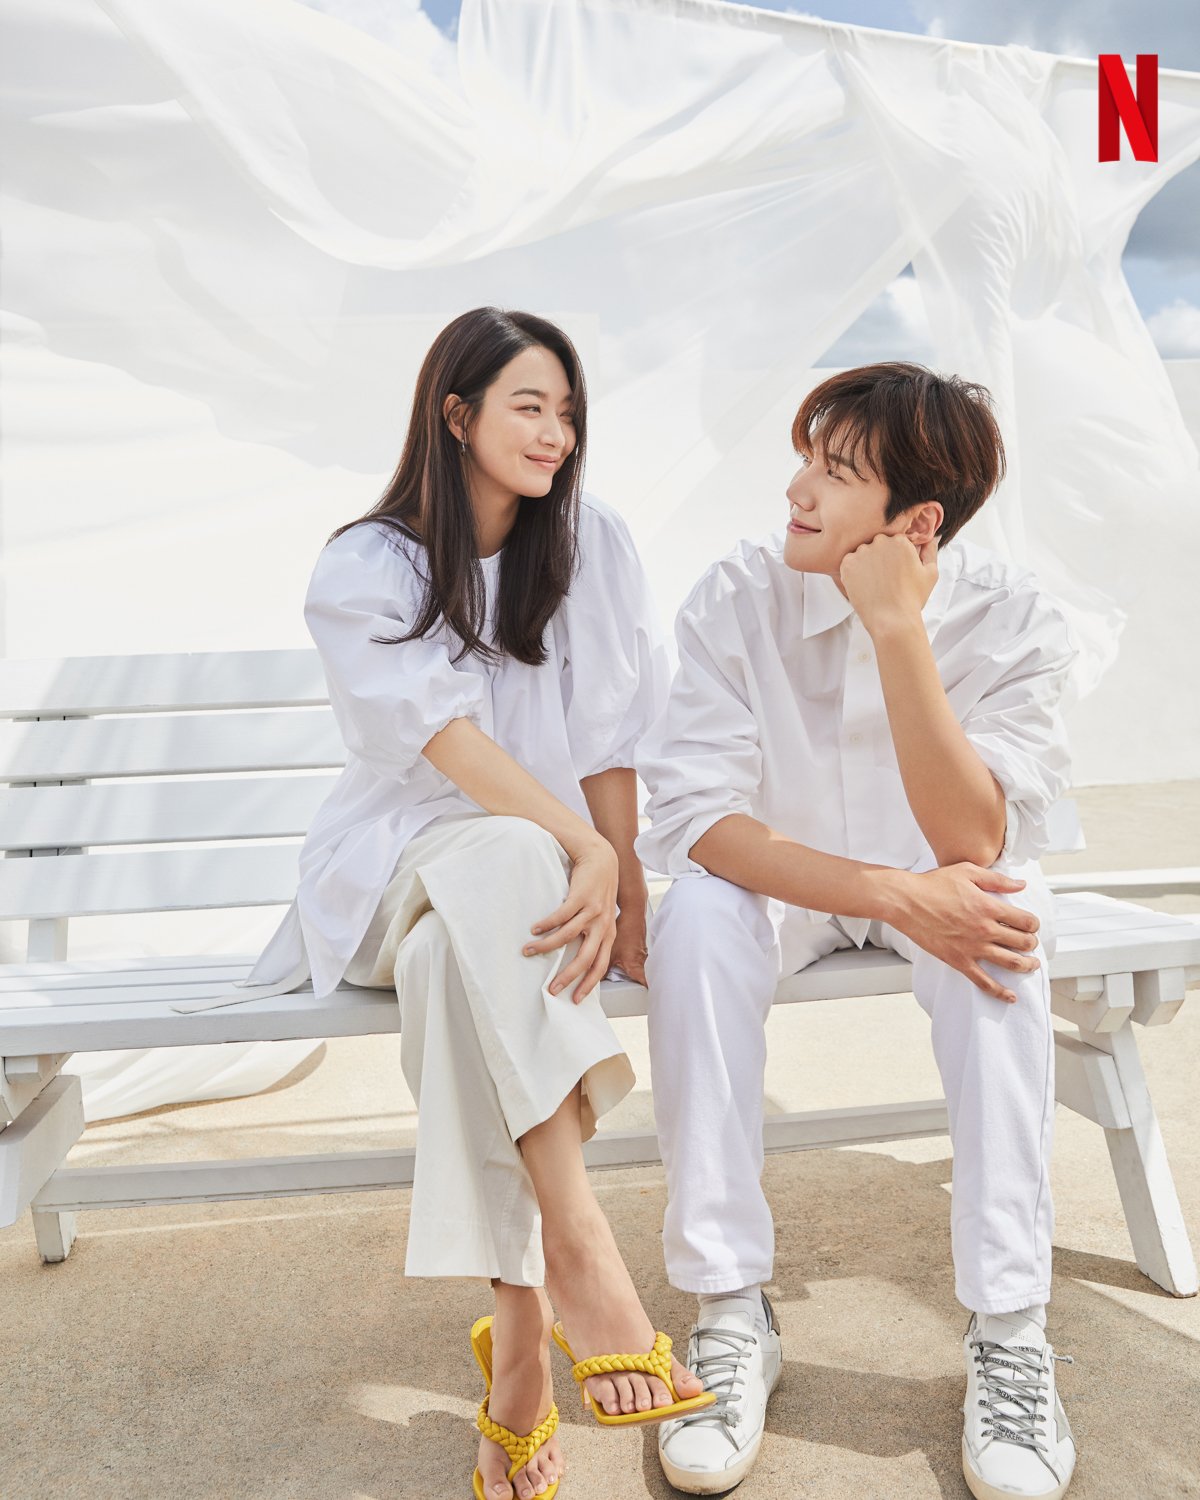 'Hometown Cha-Cha-Cha' đang là bộ phim Hàn Quốc được nhiều người yêu thích bởi nội dung nhẹ nhàng, sâu lắng, đầy tính nhân văn. Bên cạnh đó, sự xuất hiện của Shin Min Ah trong vai nữ chính cũng thu hút sự chú ý của khán giả.